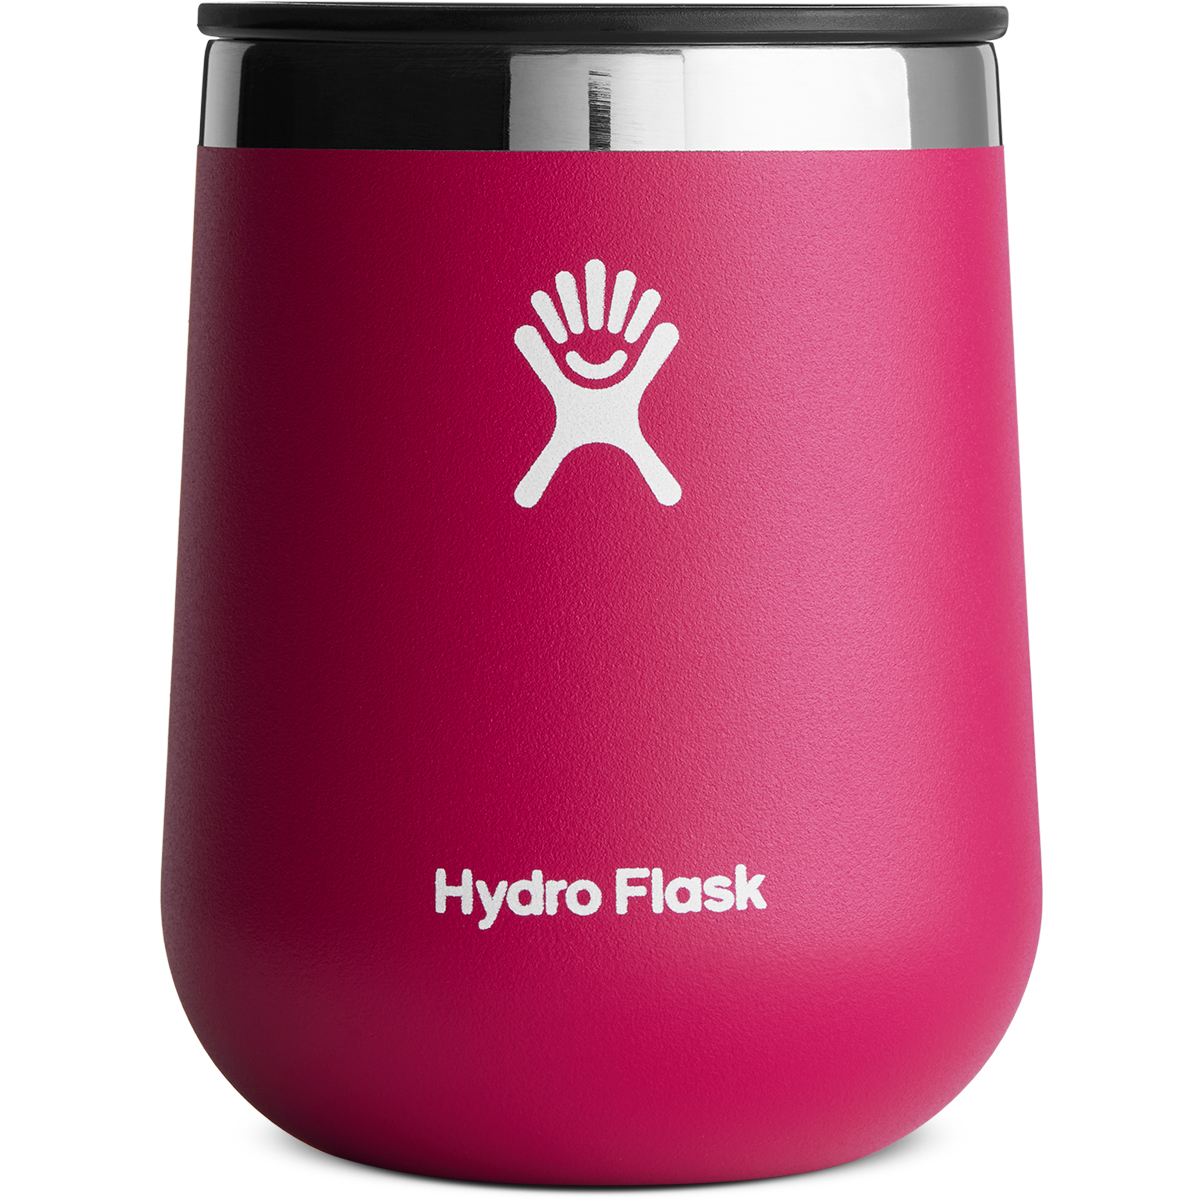 Hydro Flask 10 Oz. Wine Tumbler